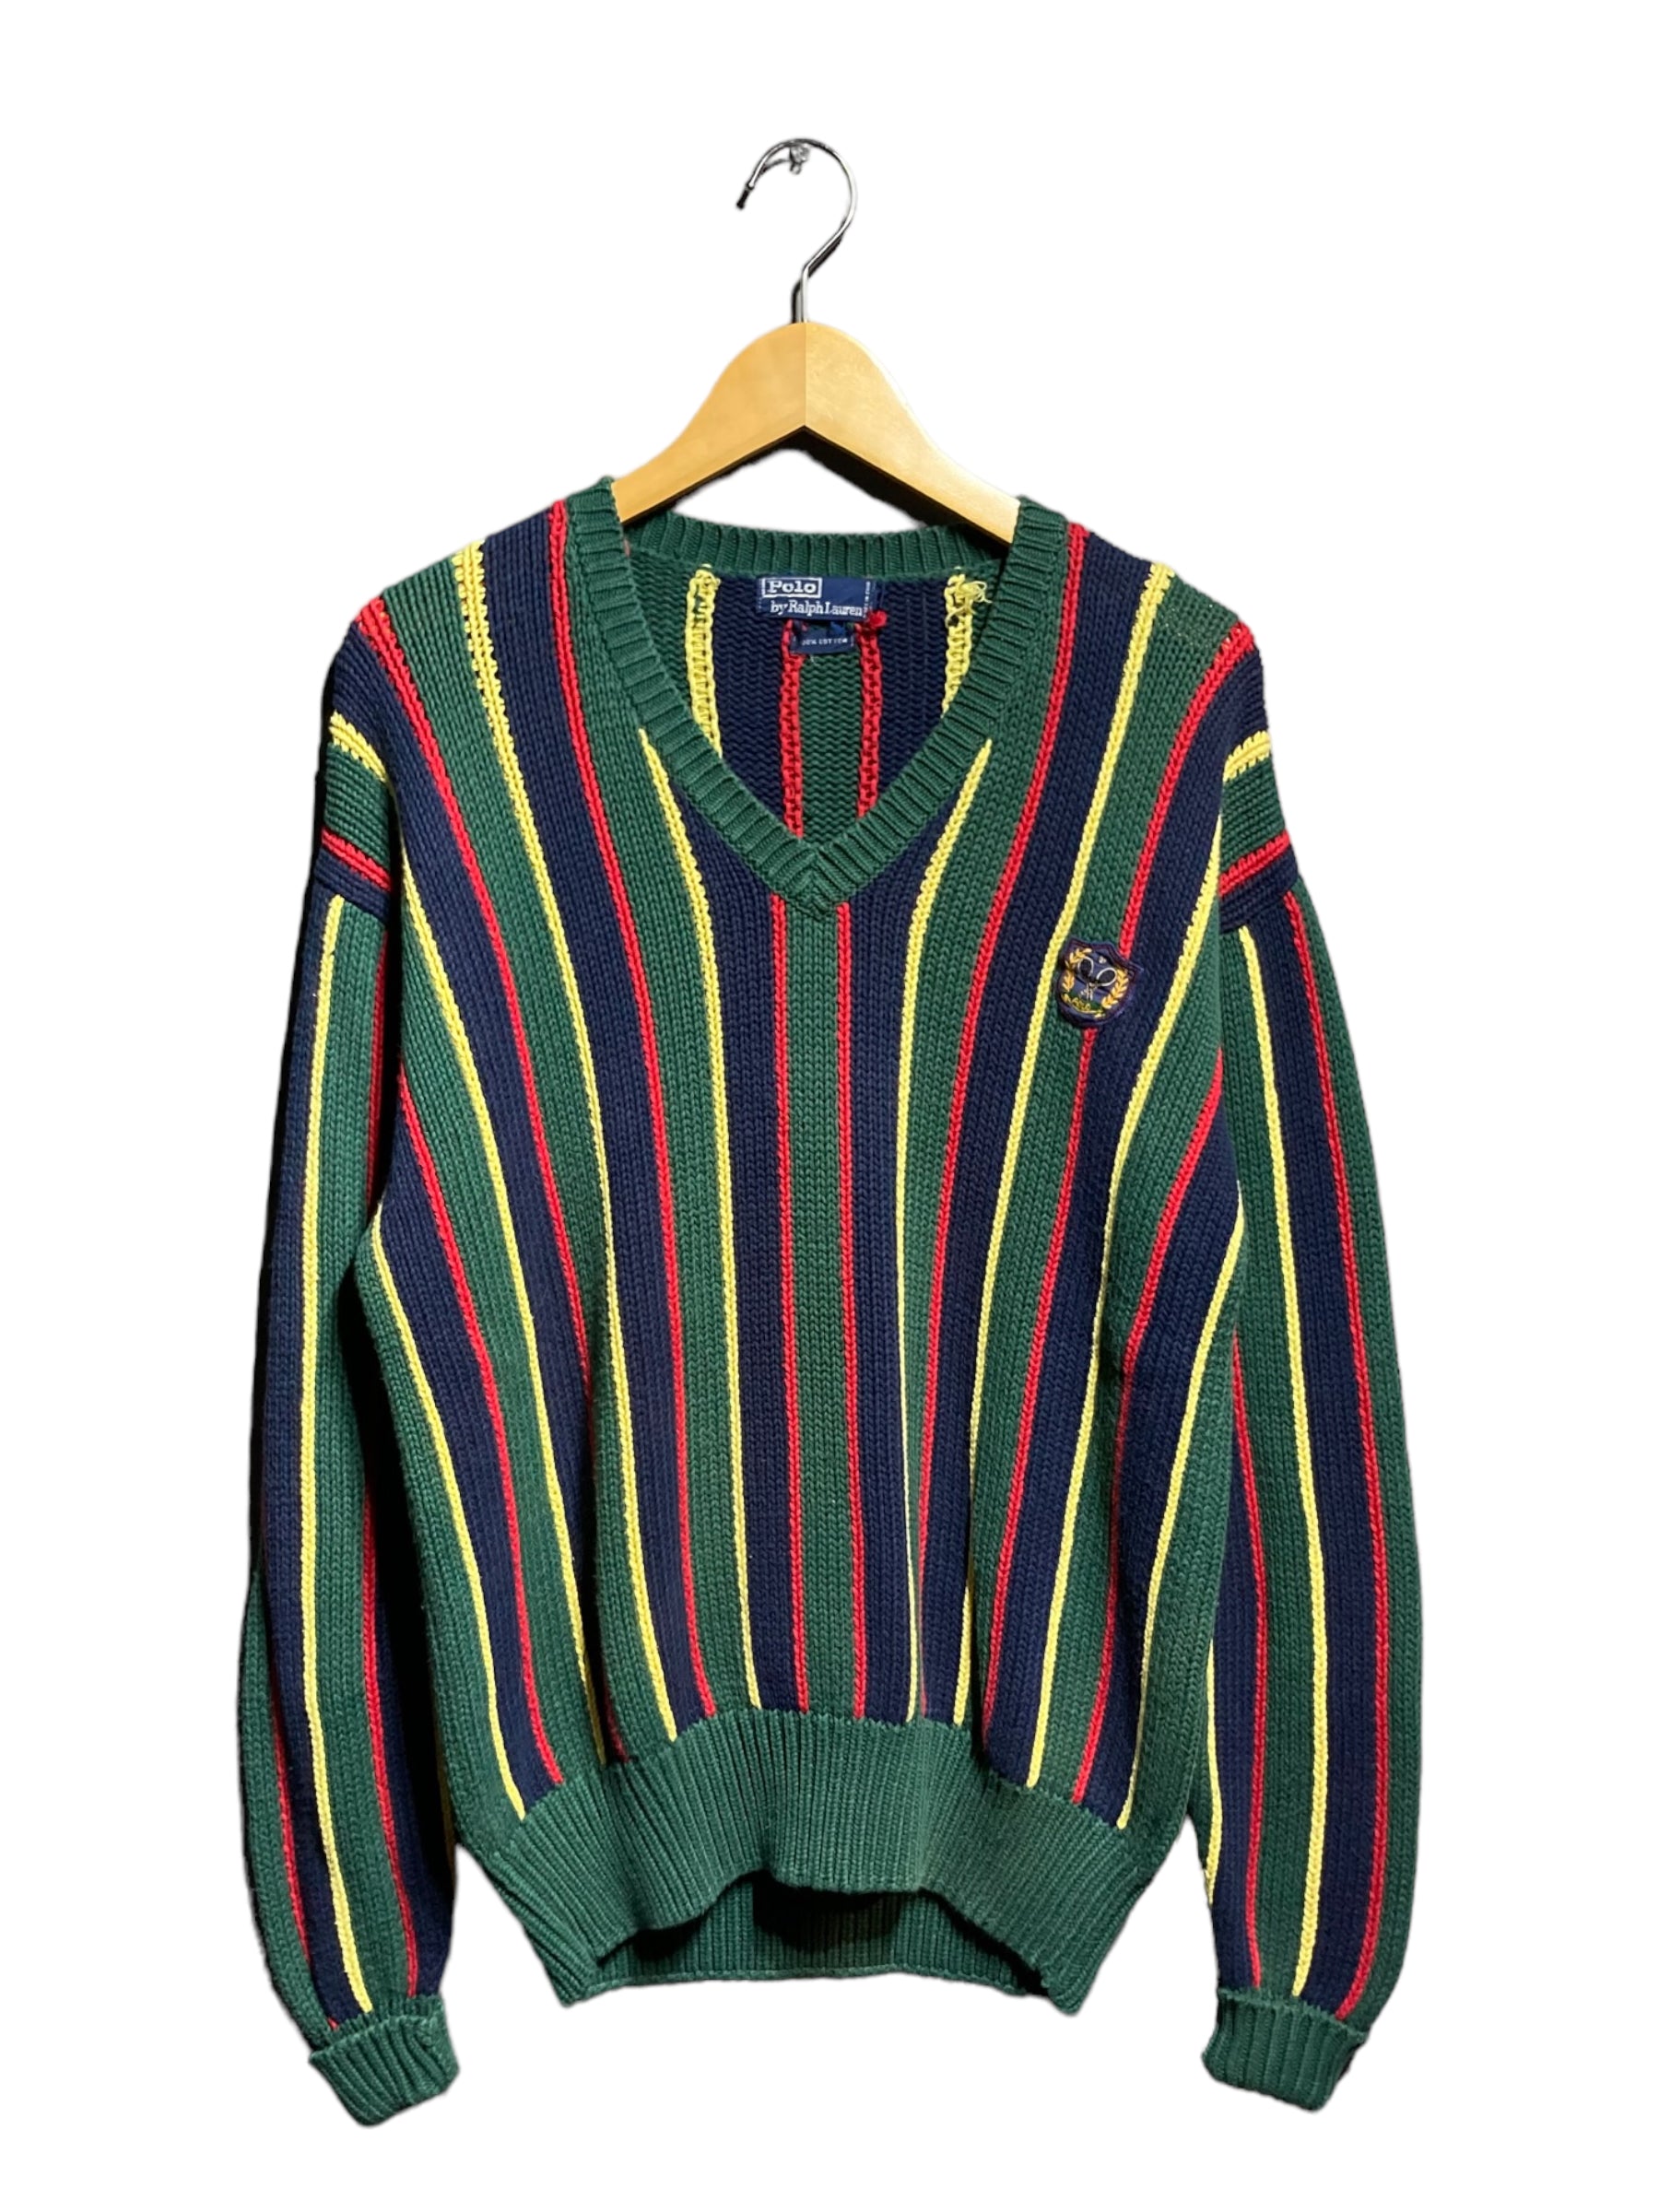 Polo Ralph Lauren ポロ ラルフローレン knit sweater ニット セーター